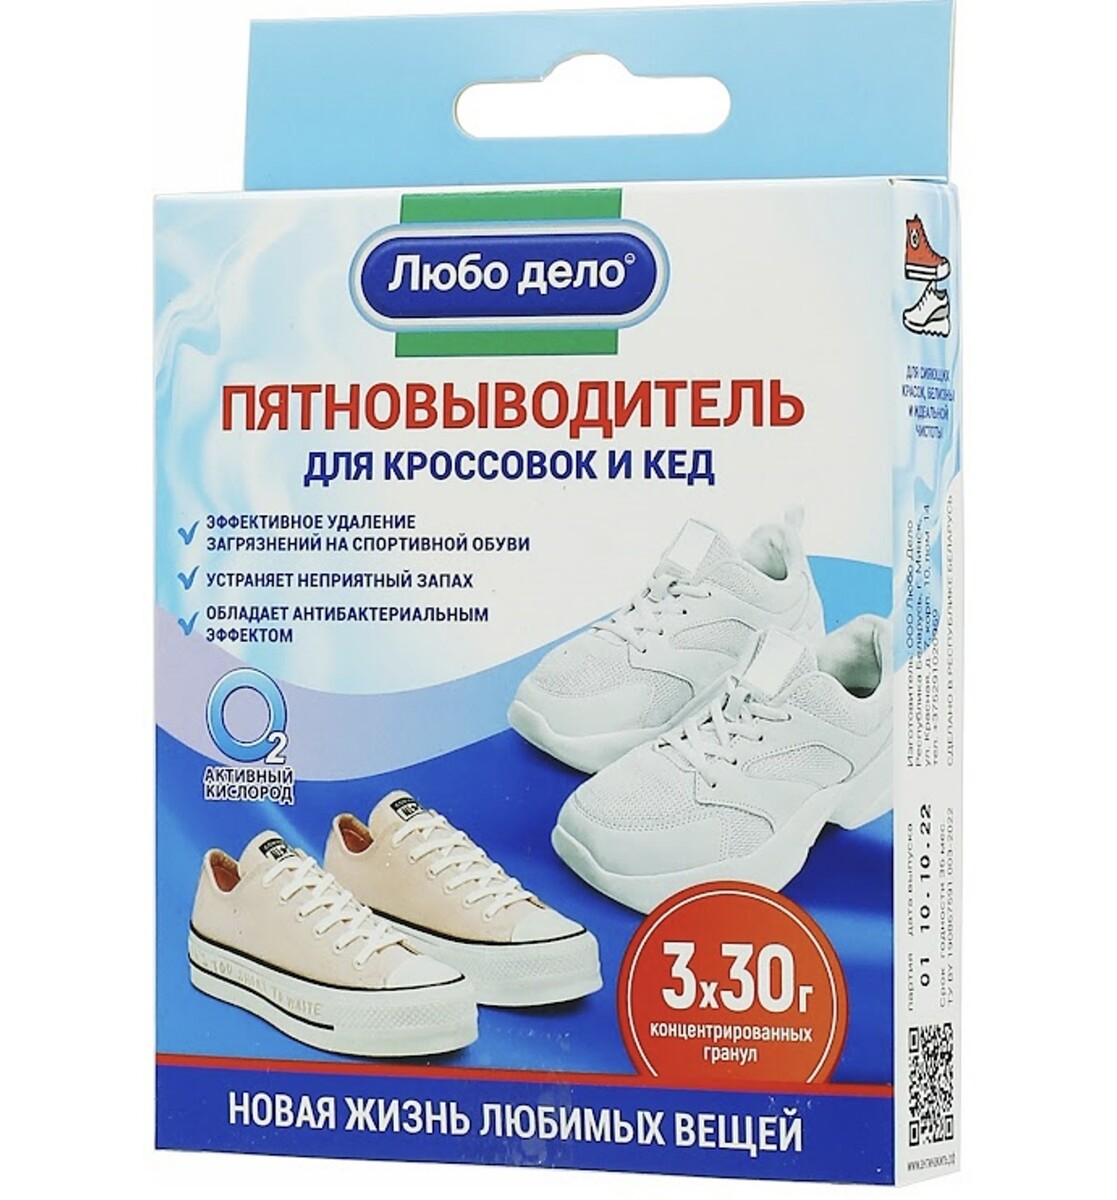 Пятновыводитель - очиститель для кроссовок и кед, 3 саше- пакета по 30г универсальный пятновыводитель hg 500г